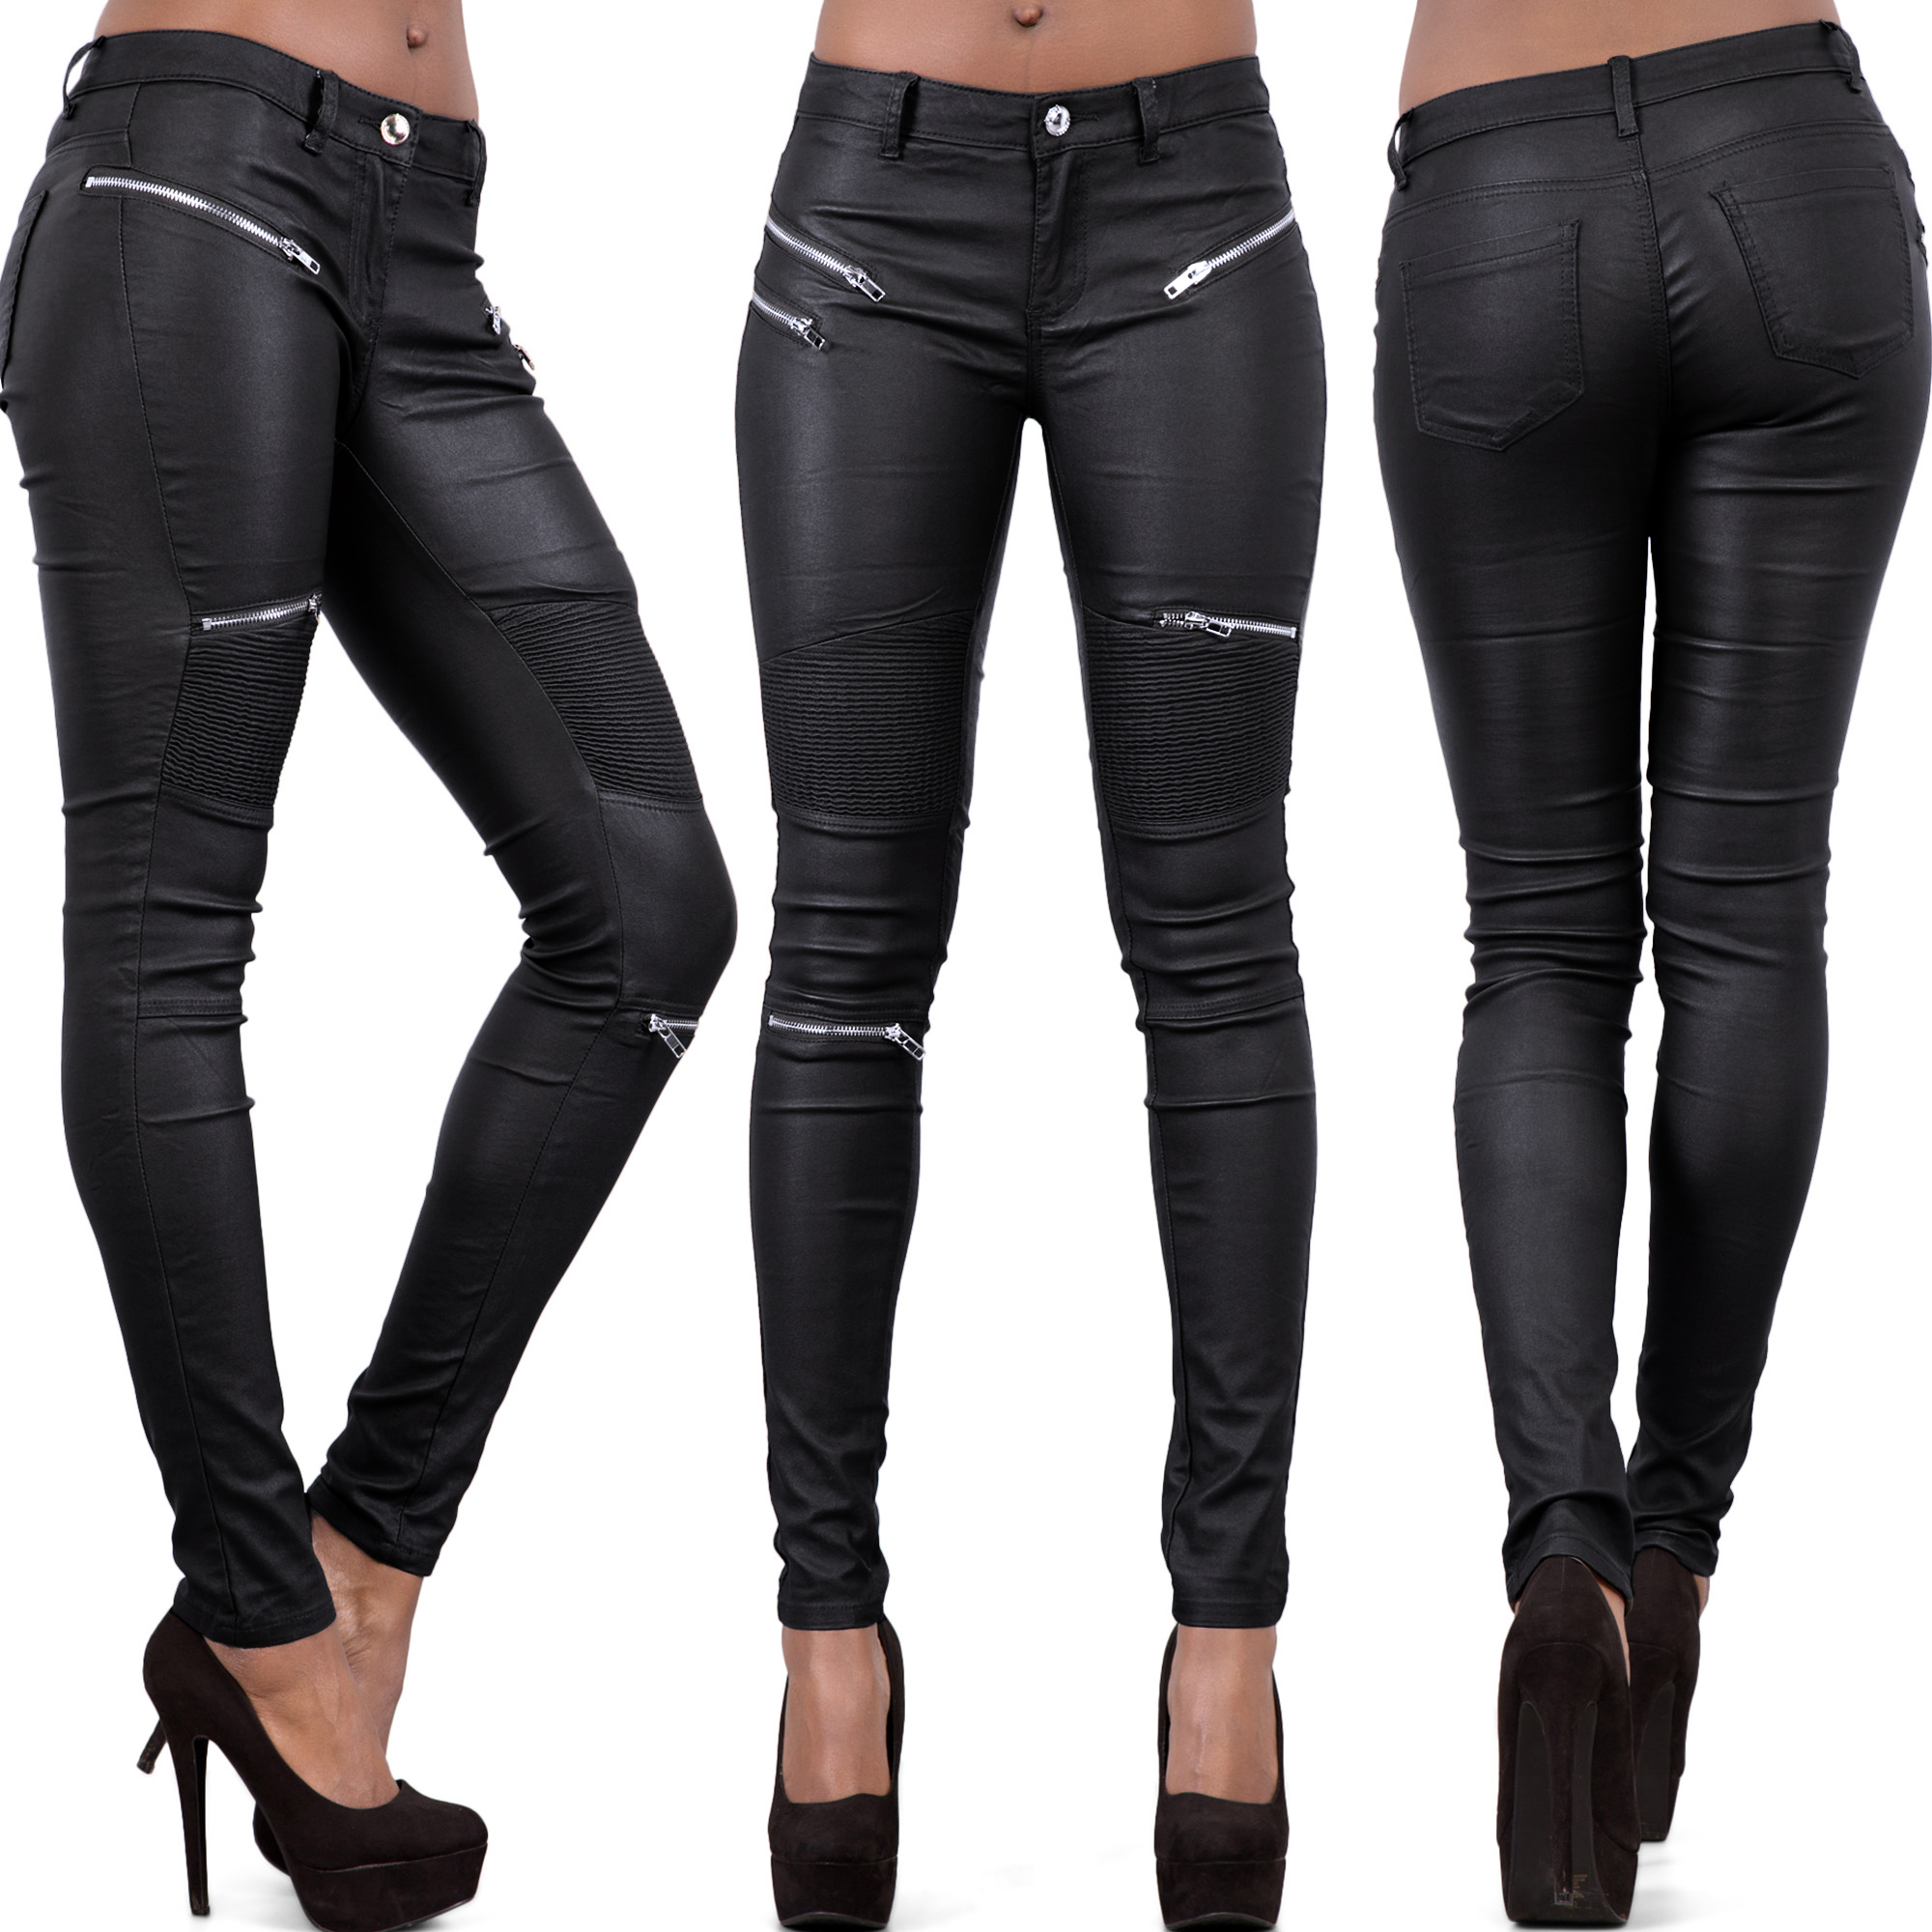 Womens Leather Trousers Black Wet Look Leggings Ladies Jeans Slim Fit